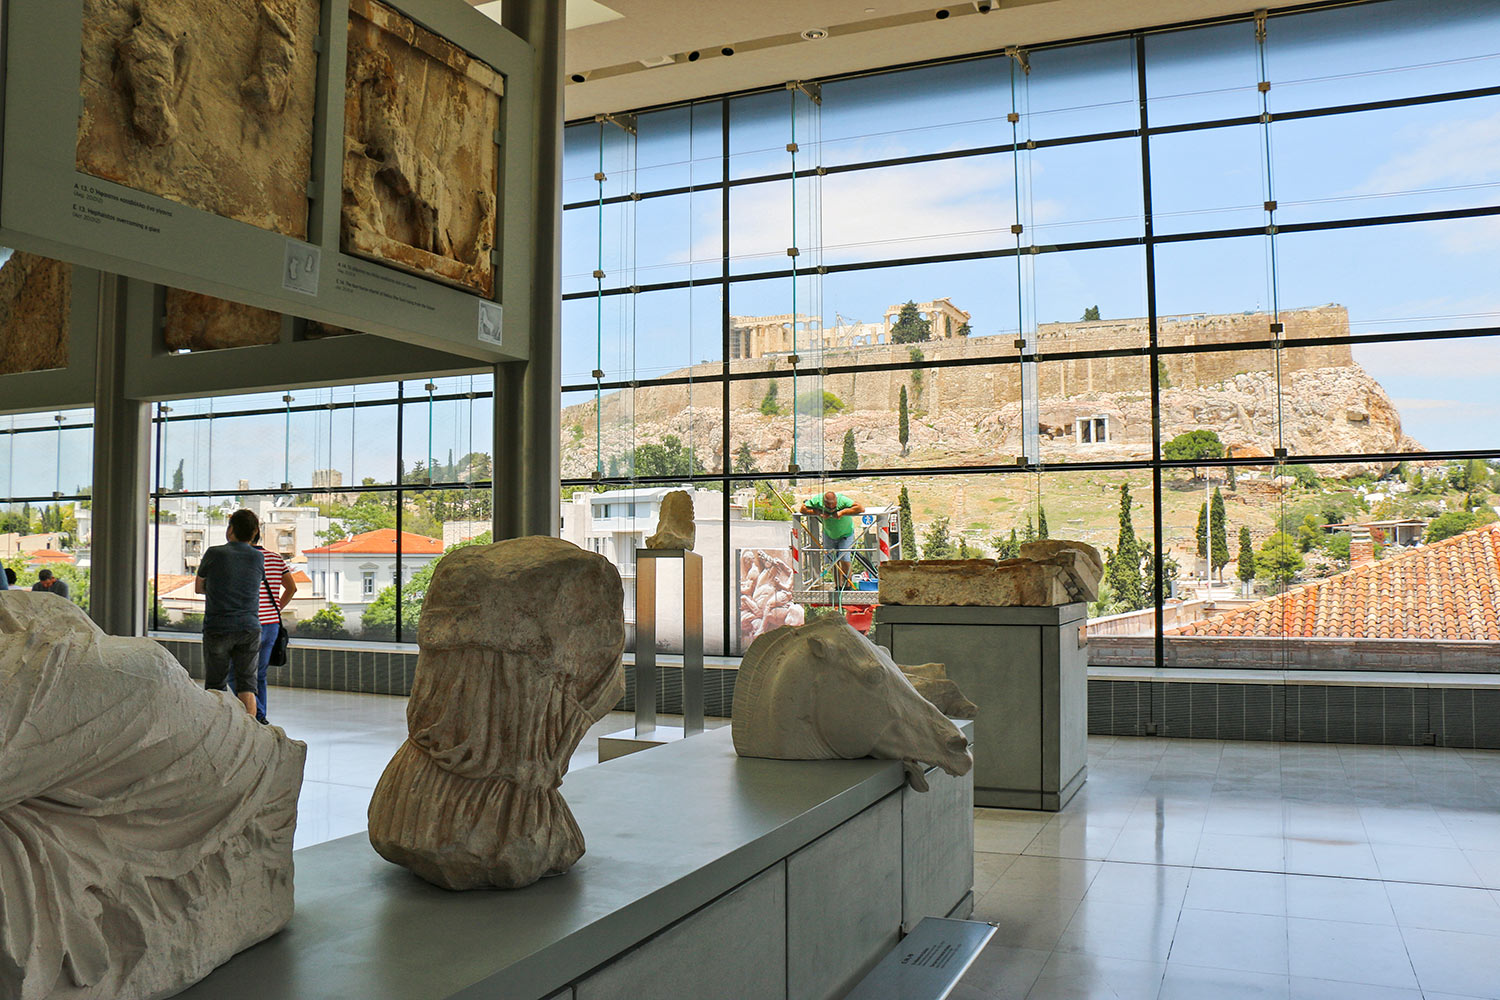 Musée de l'Acropole, Athènes, Grèce / Acropolis Museum, Athens, Greece